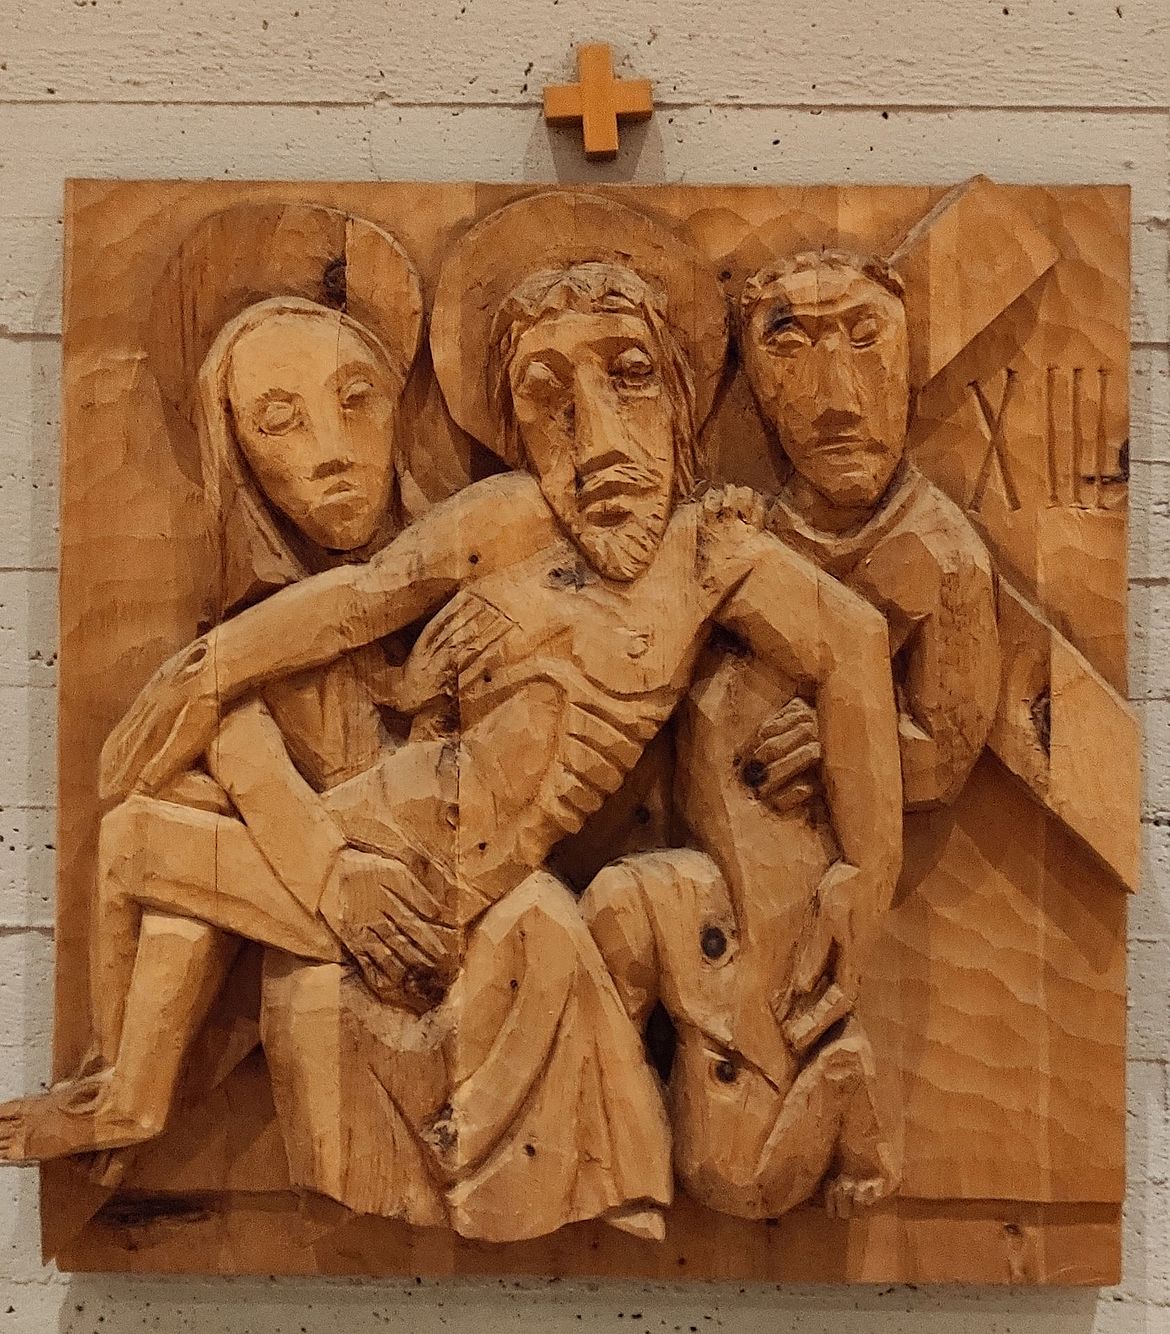 13. Station: Jesus wird vom Kreuz genommen und in den Schoß seiner Mutter gelegt